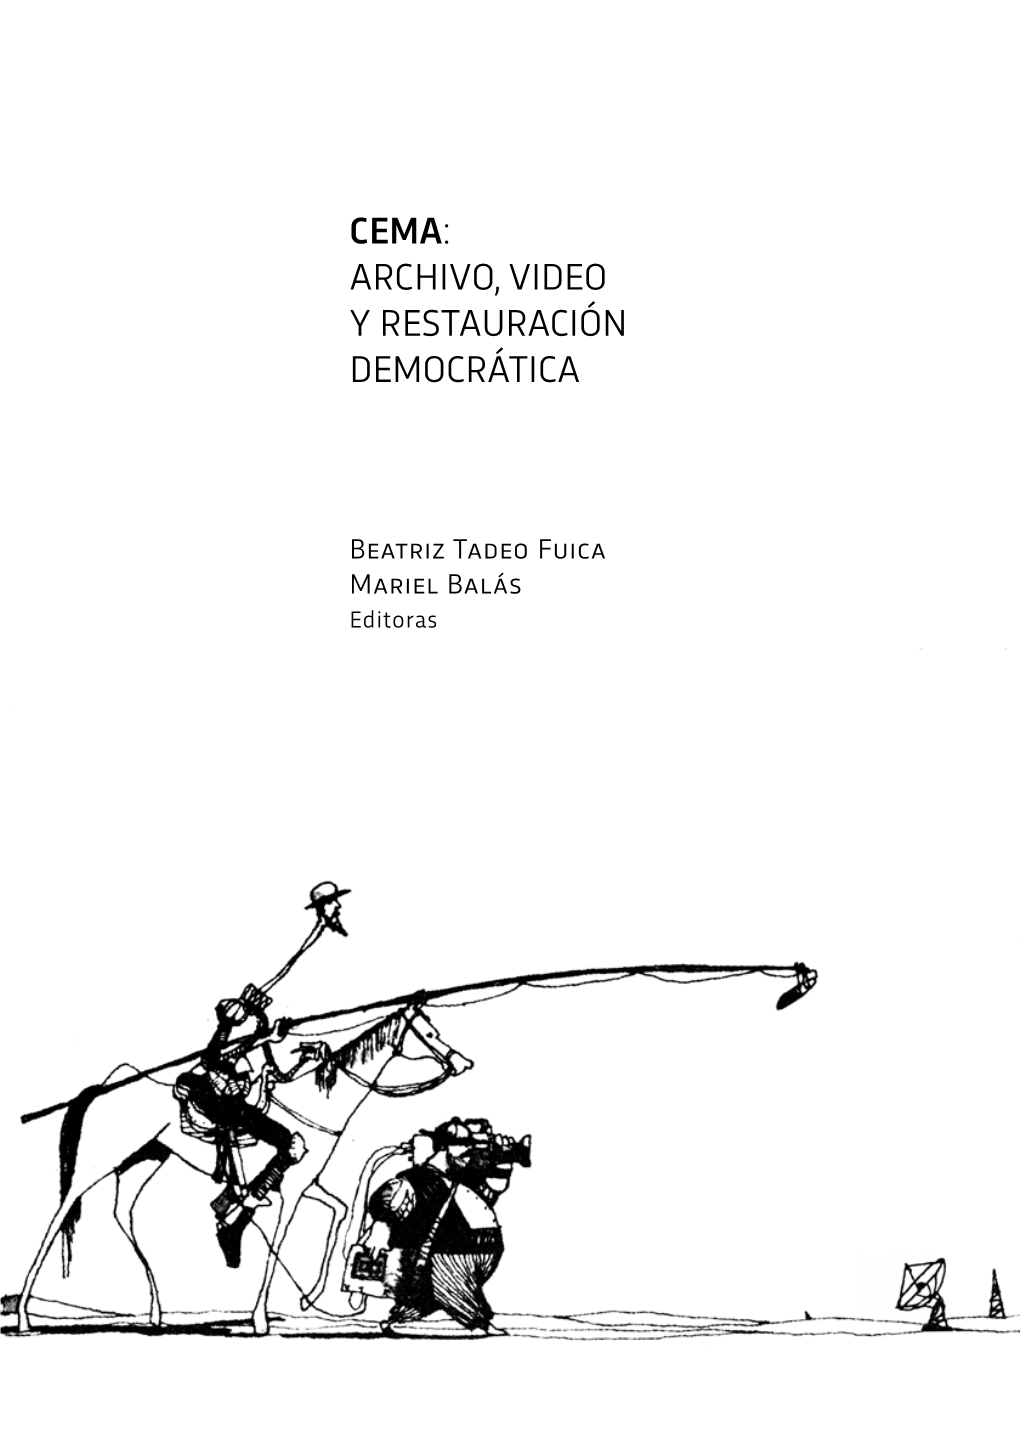 CEMA: Archivo, Video Y Restauración Democrática